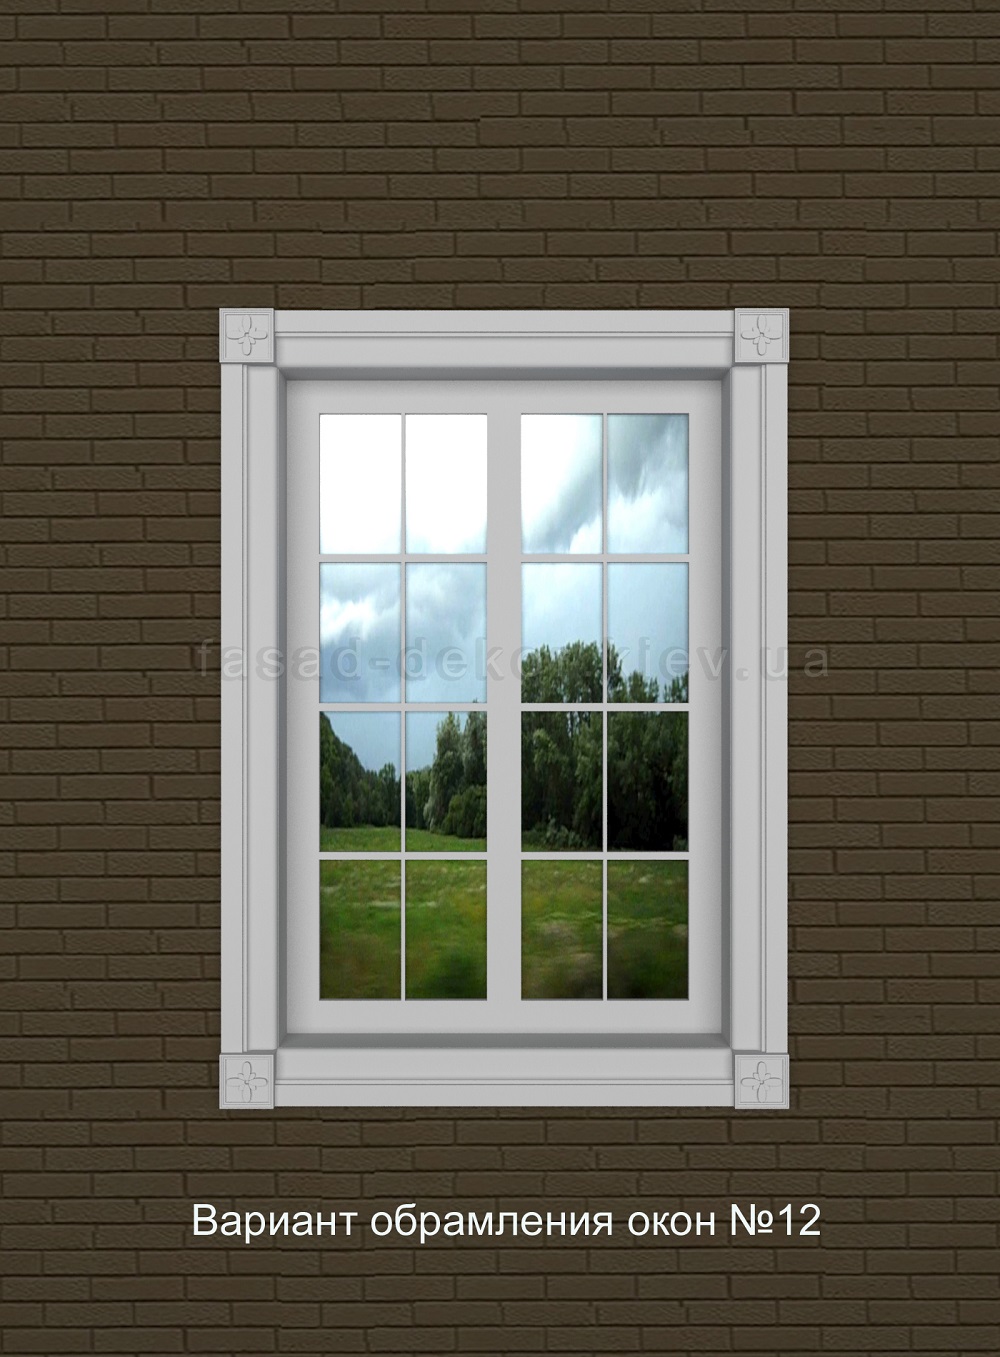 Без штор: 10 оригинальных идей для декора окна — INMYROOM